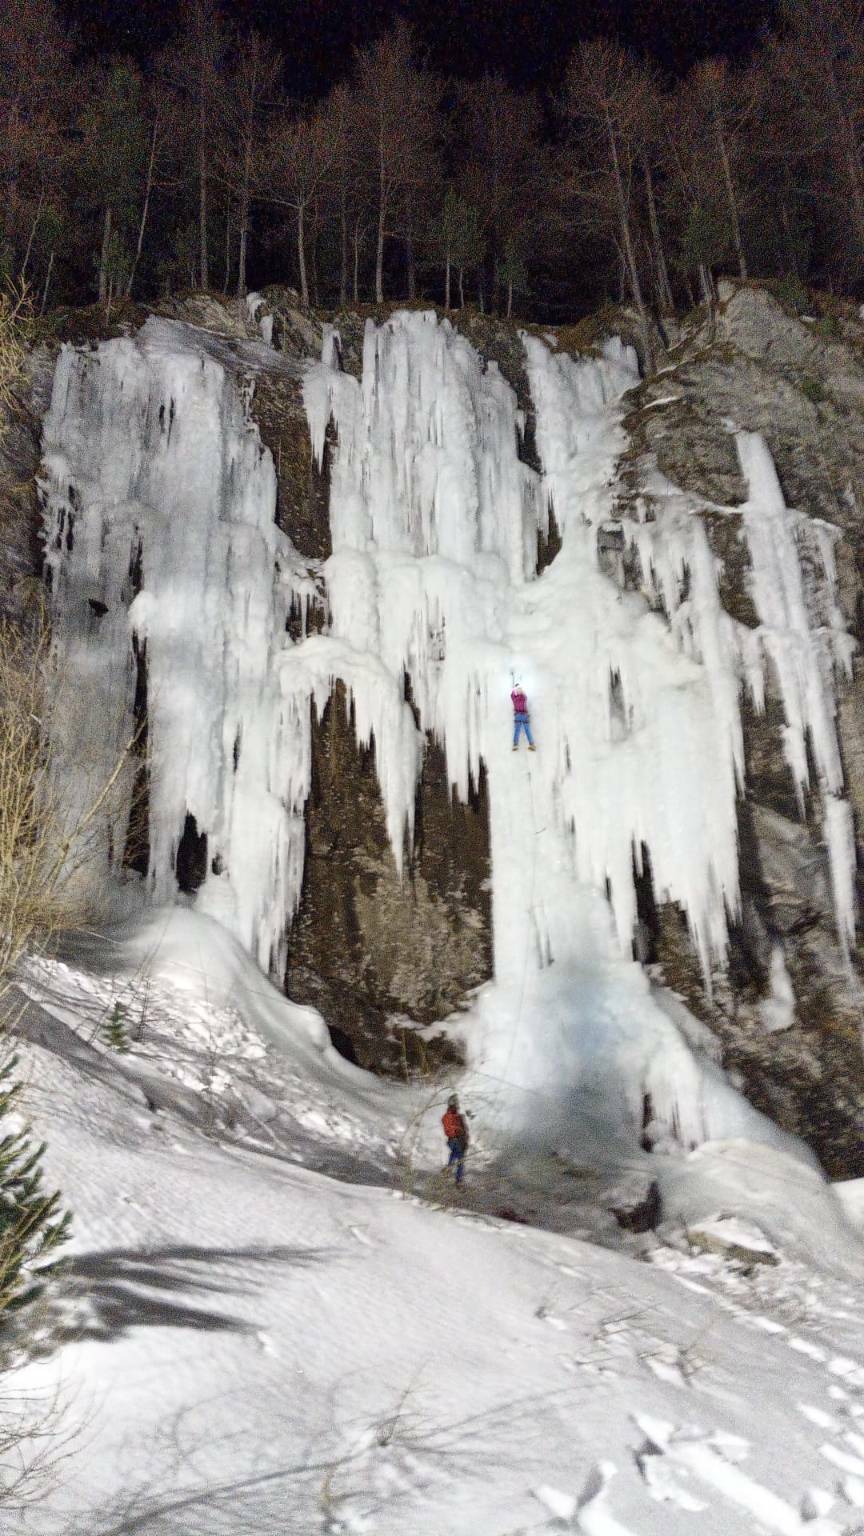 A Pontechianale la parete di ghiaccio diventa teatro di una sessione di arrampicata